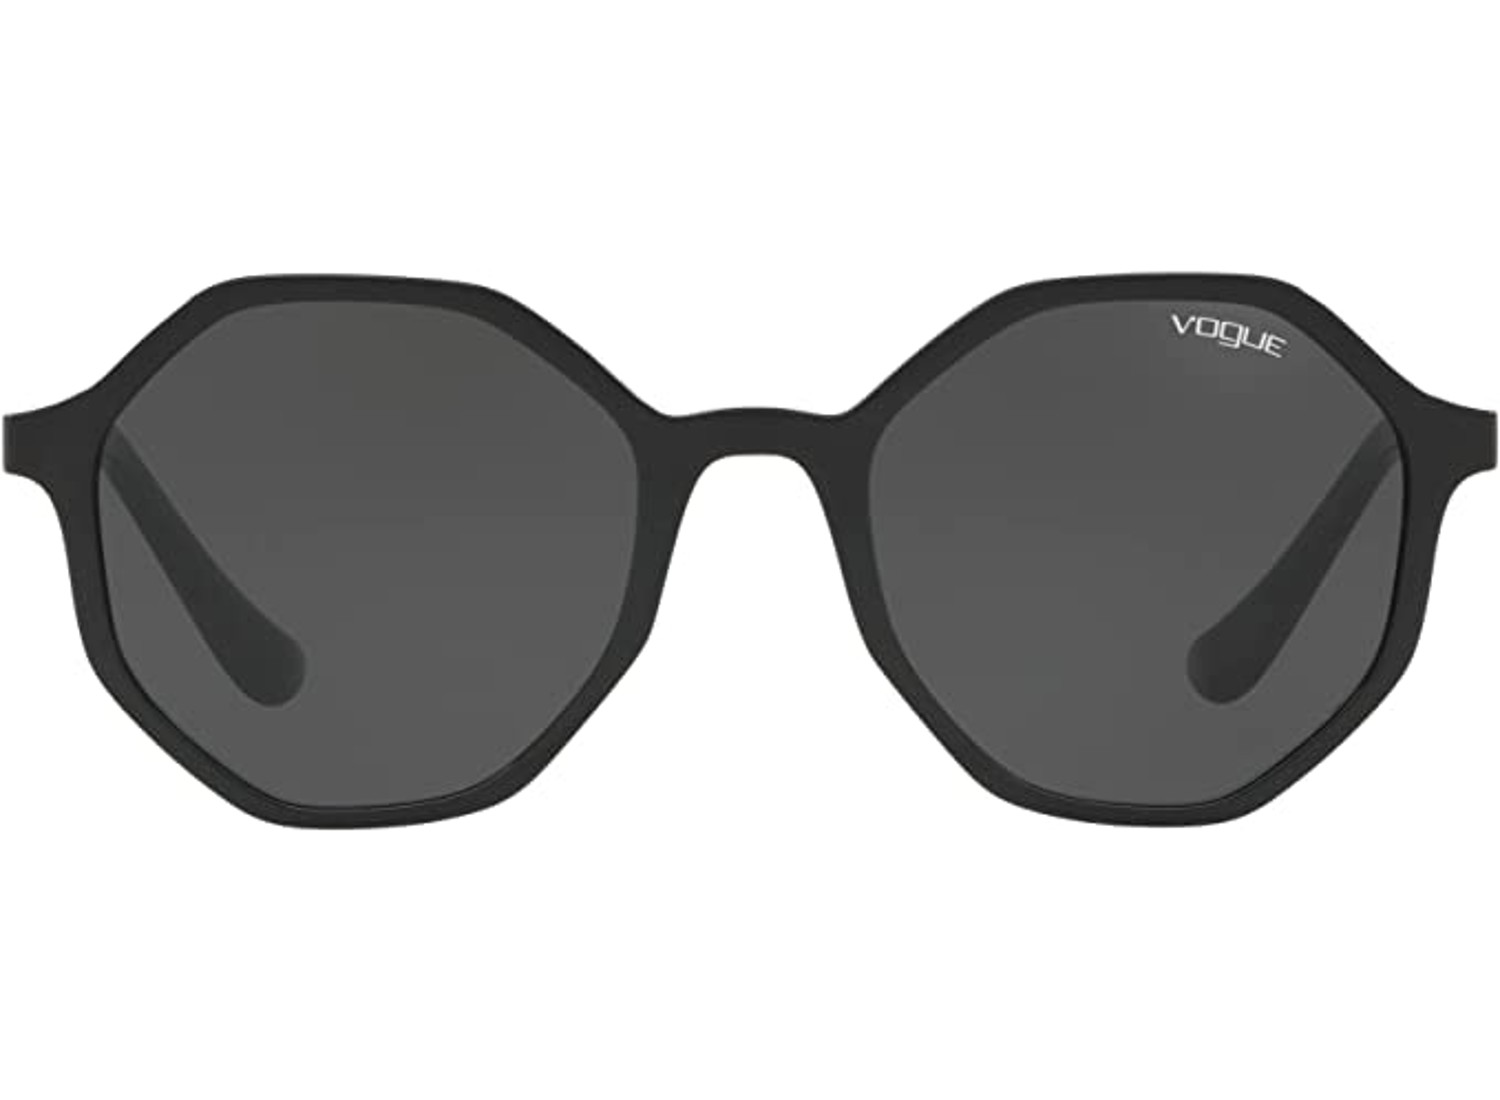 Vogue Irregular Round Sunglasses